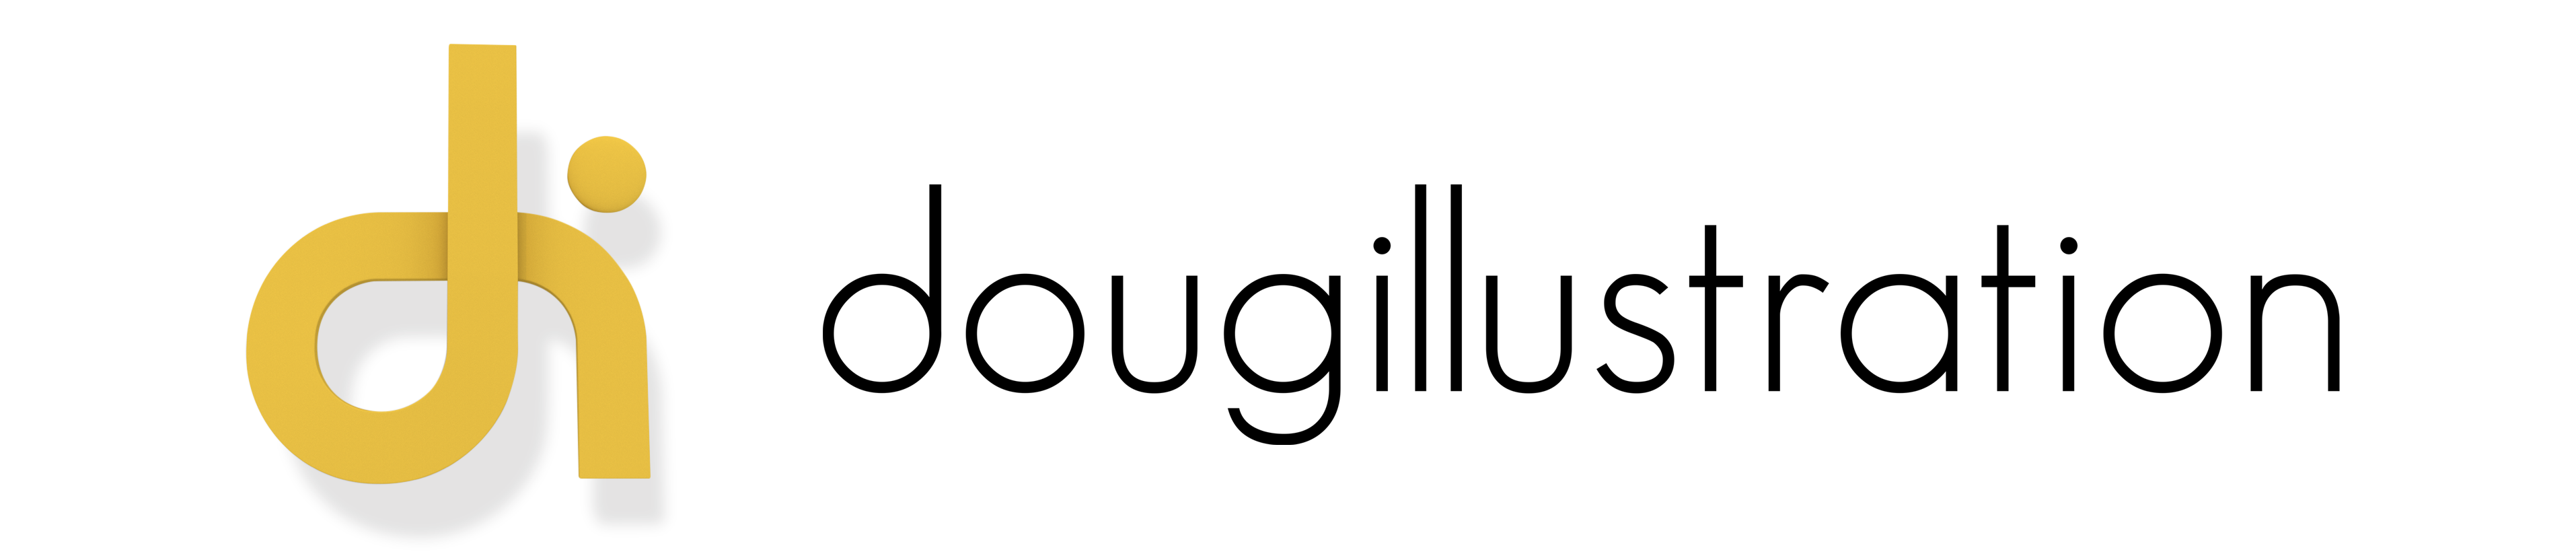 dougillustration logo